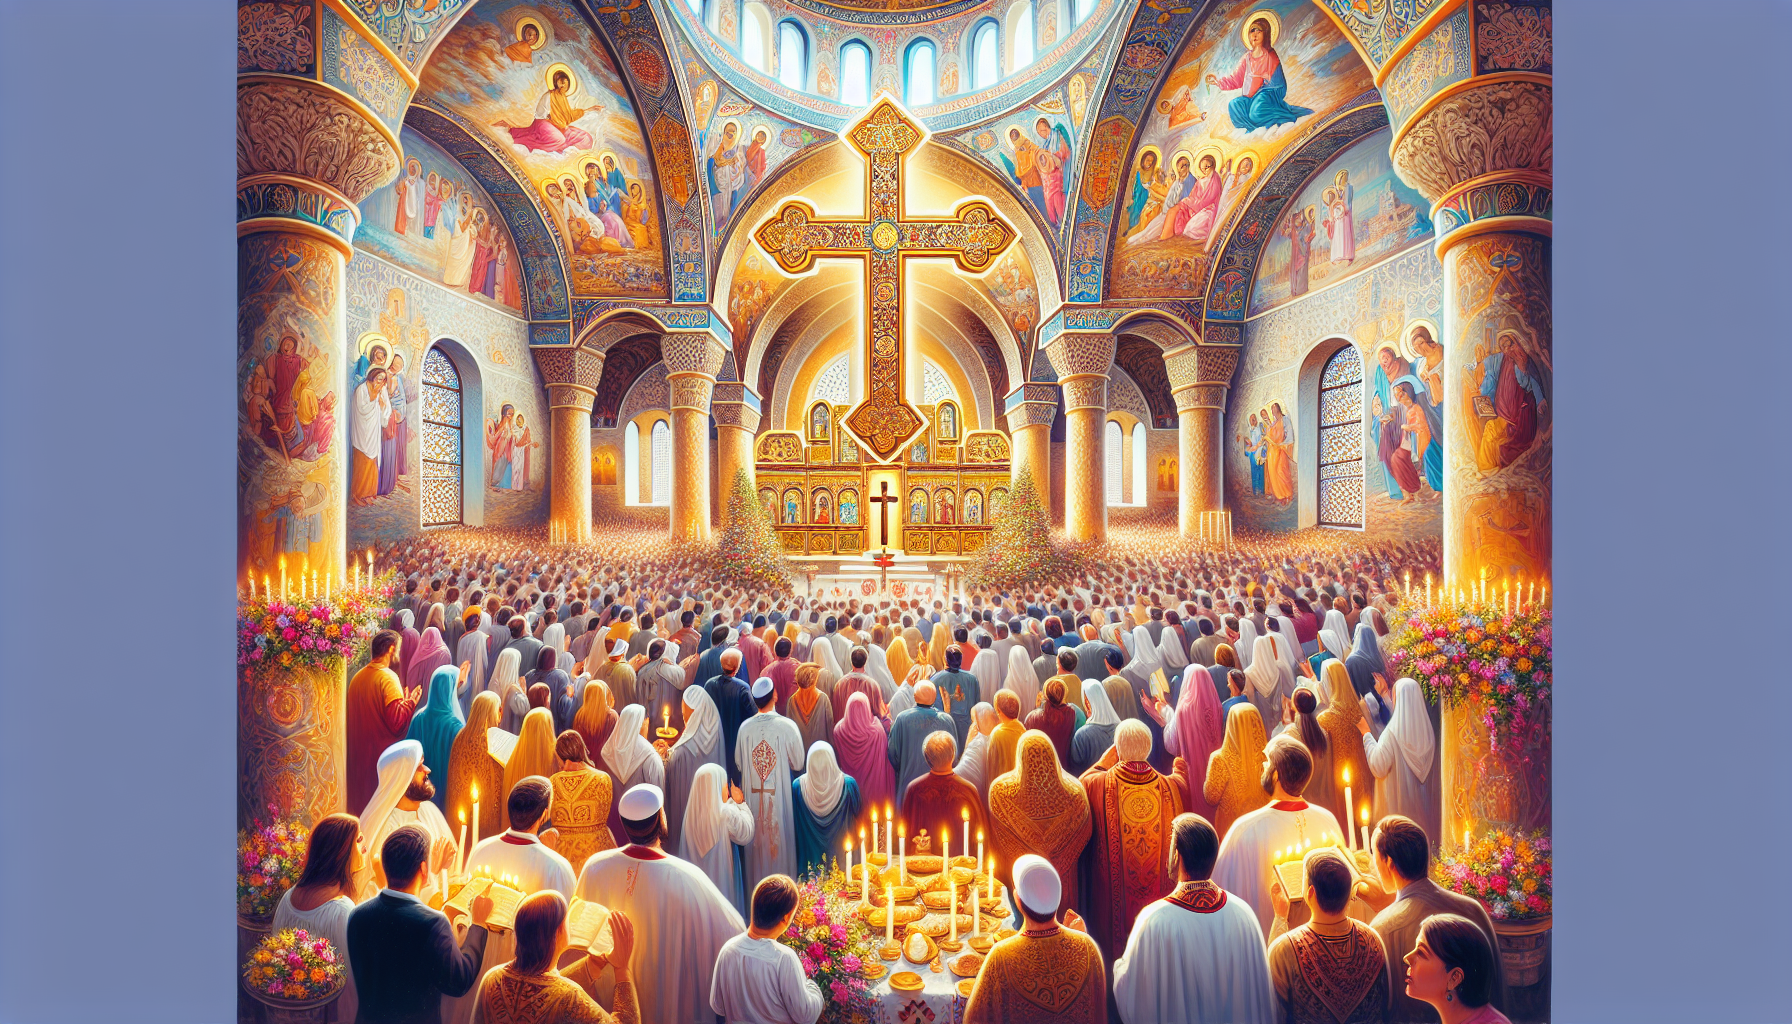 Una imagen vibrante de una celebración de la Cruz Gloriosa, con una congregación en una iglesia antigua adornada con flores coloridas y velas encendidas. En el centro, una gran cruz decorada con detal